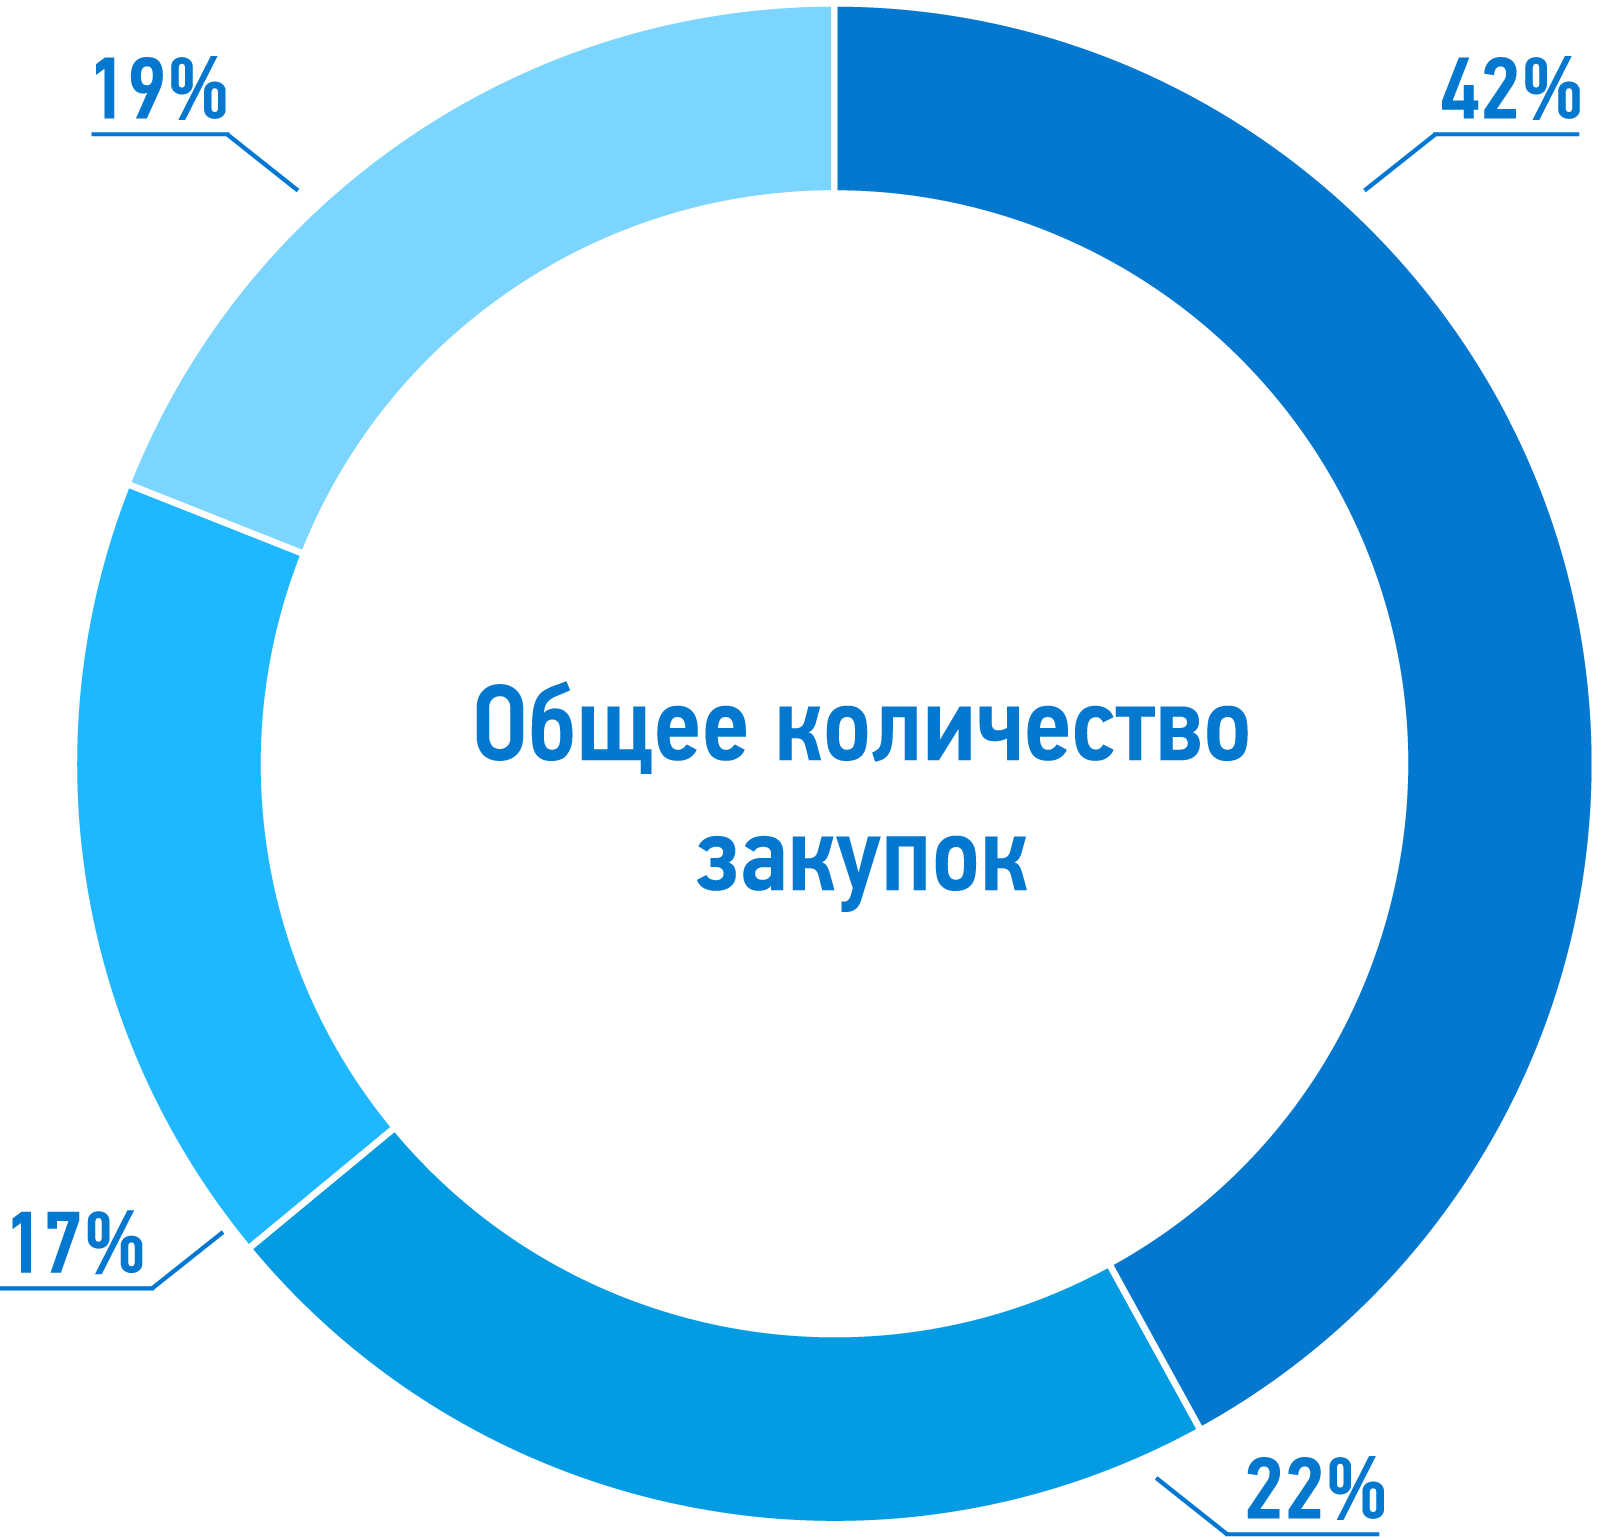 За 2021 год были проведены 6 952 закупки на общую сумму 90 357 234,83 тыс. руб. c НДС.